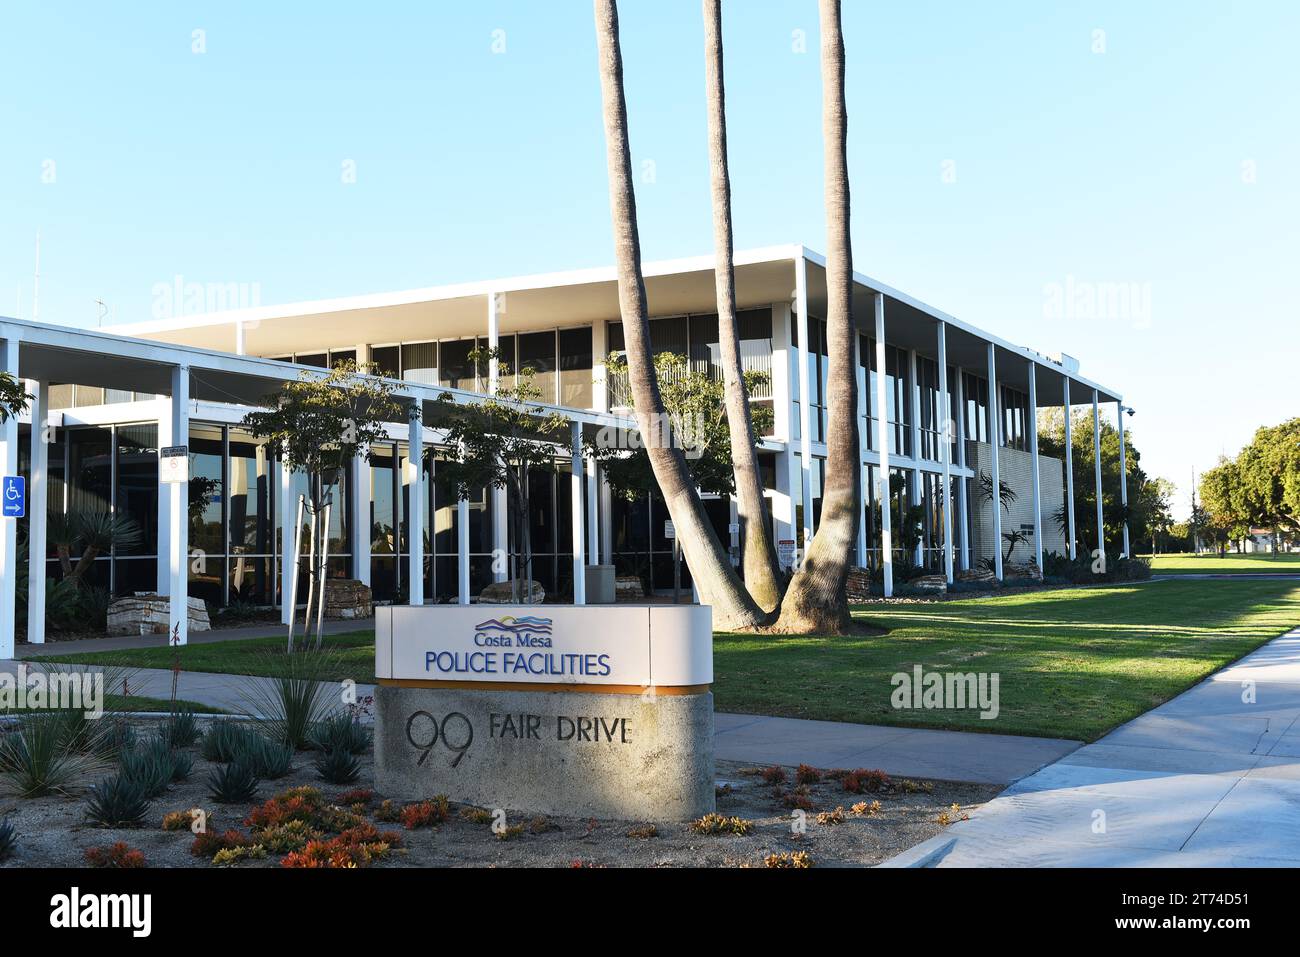 COSTA MESA, CALIFORNIA - 12 novembre 2023: Insegna Policie Facilities su Fair Drive presso il centro amministrativo di Costa Mesa. Foto Stock